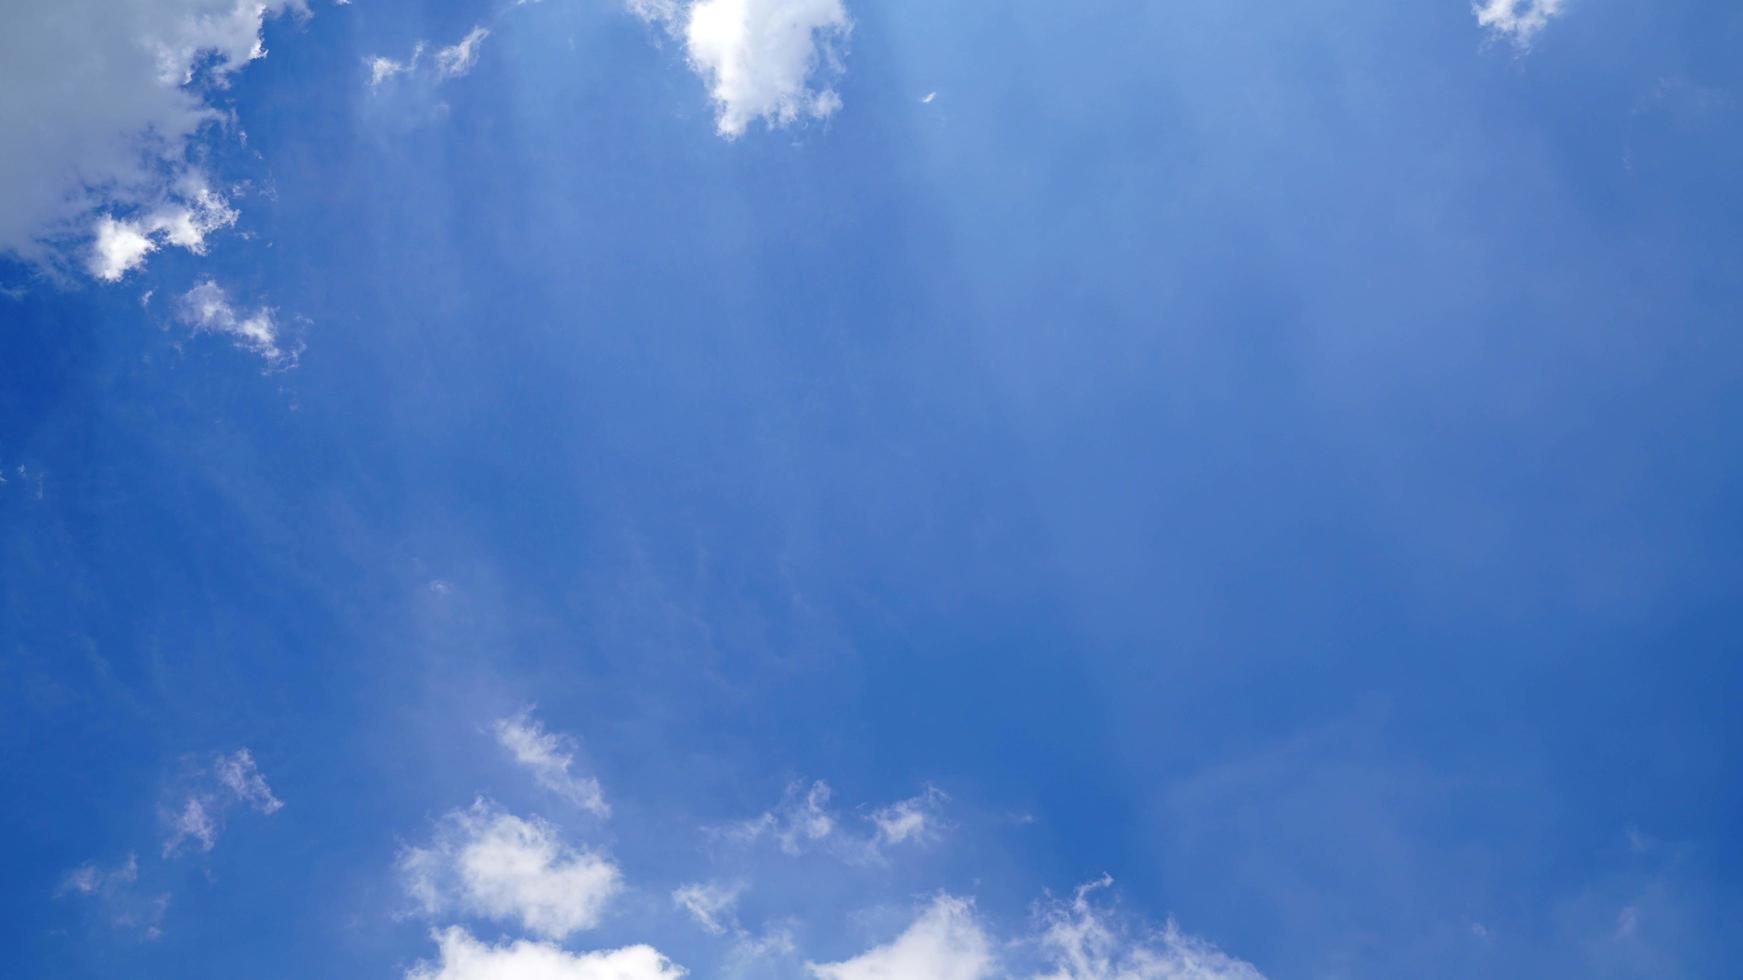 nuvem branca e fundo de céu azul com espaço de cópia foto